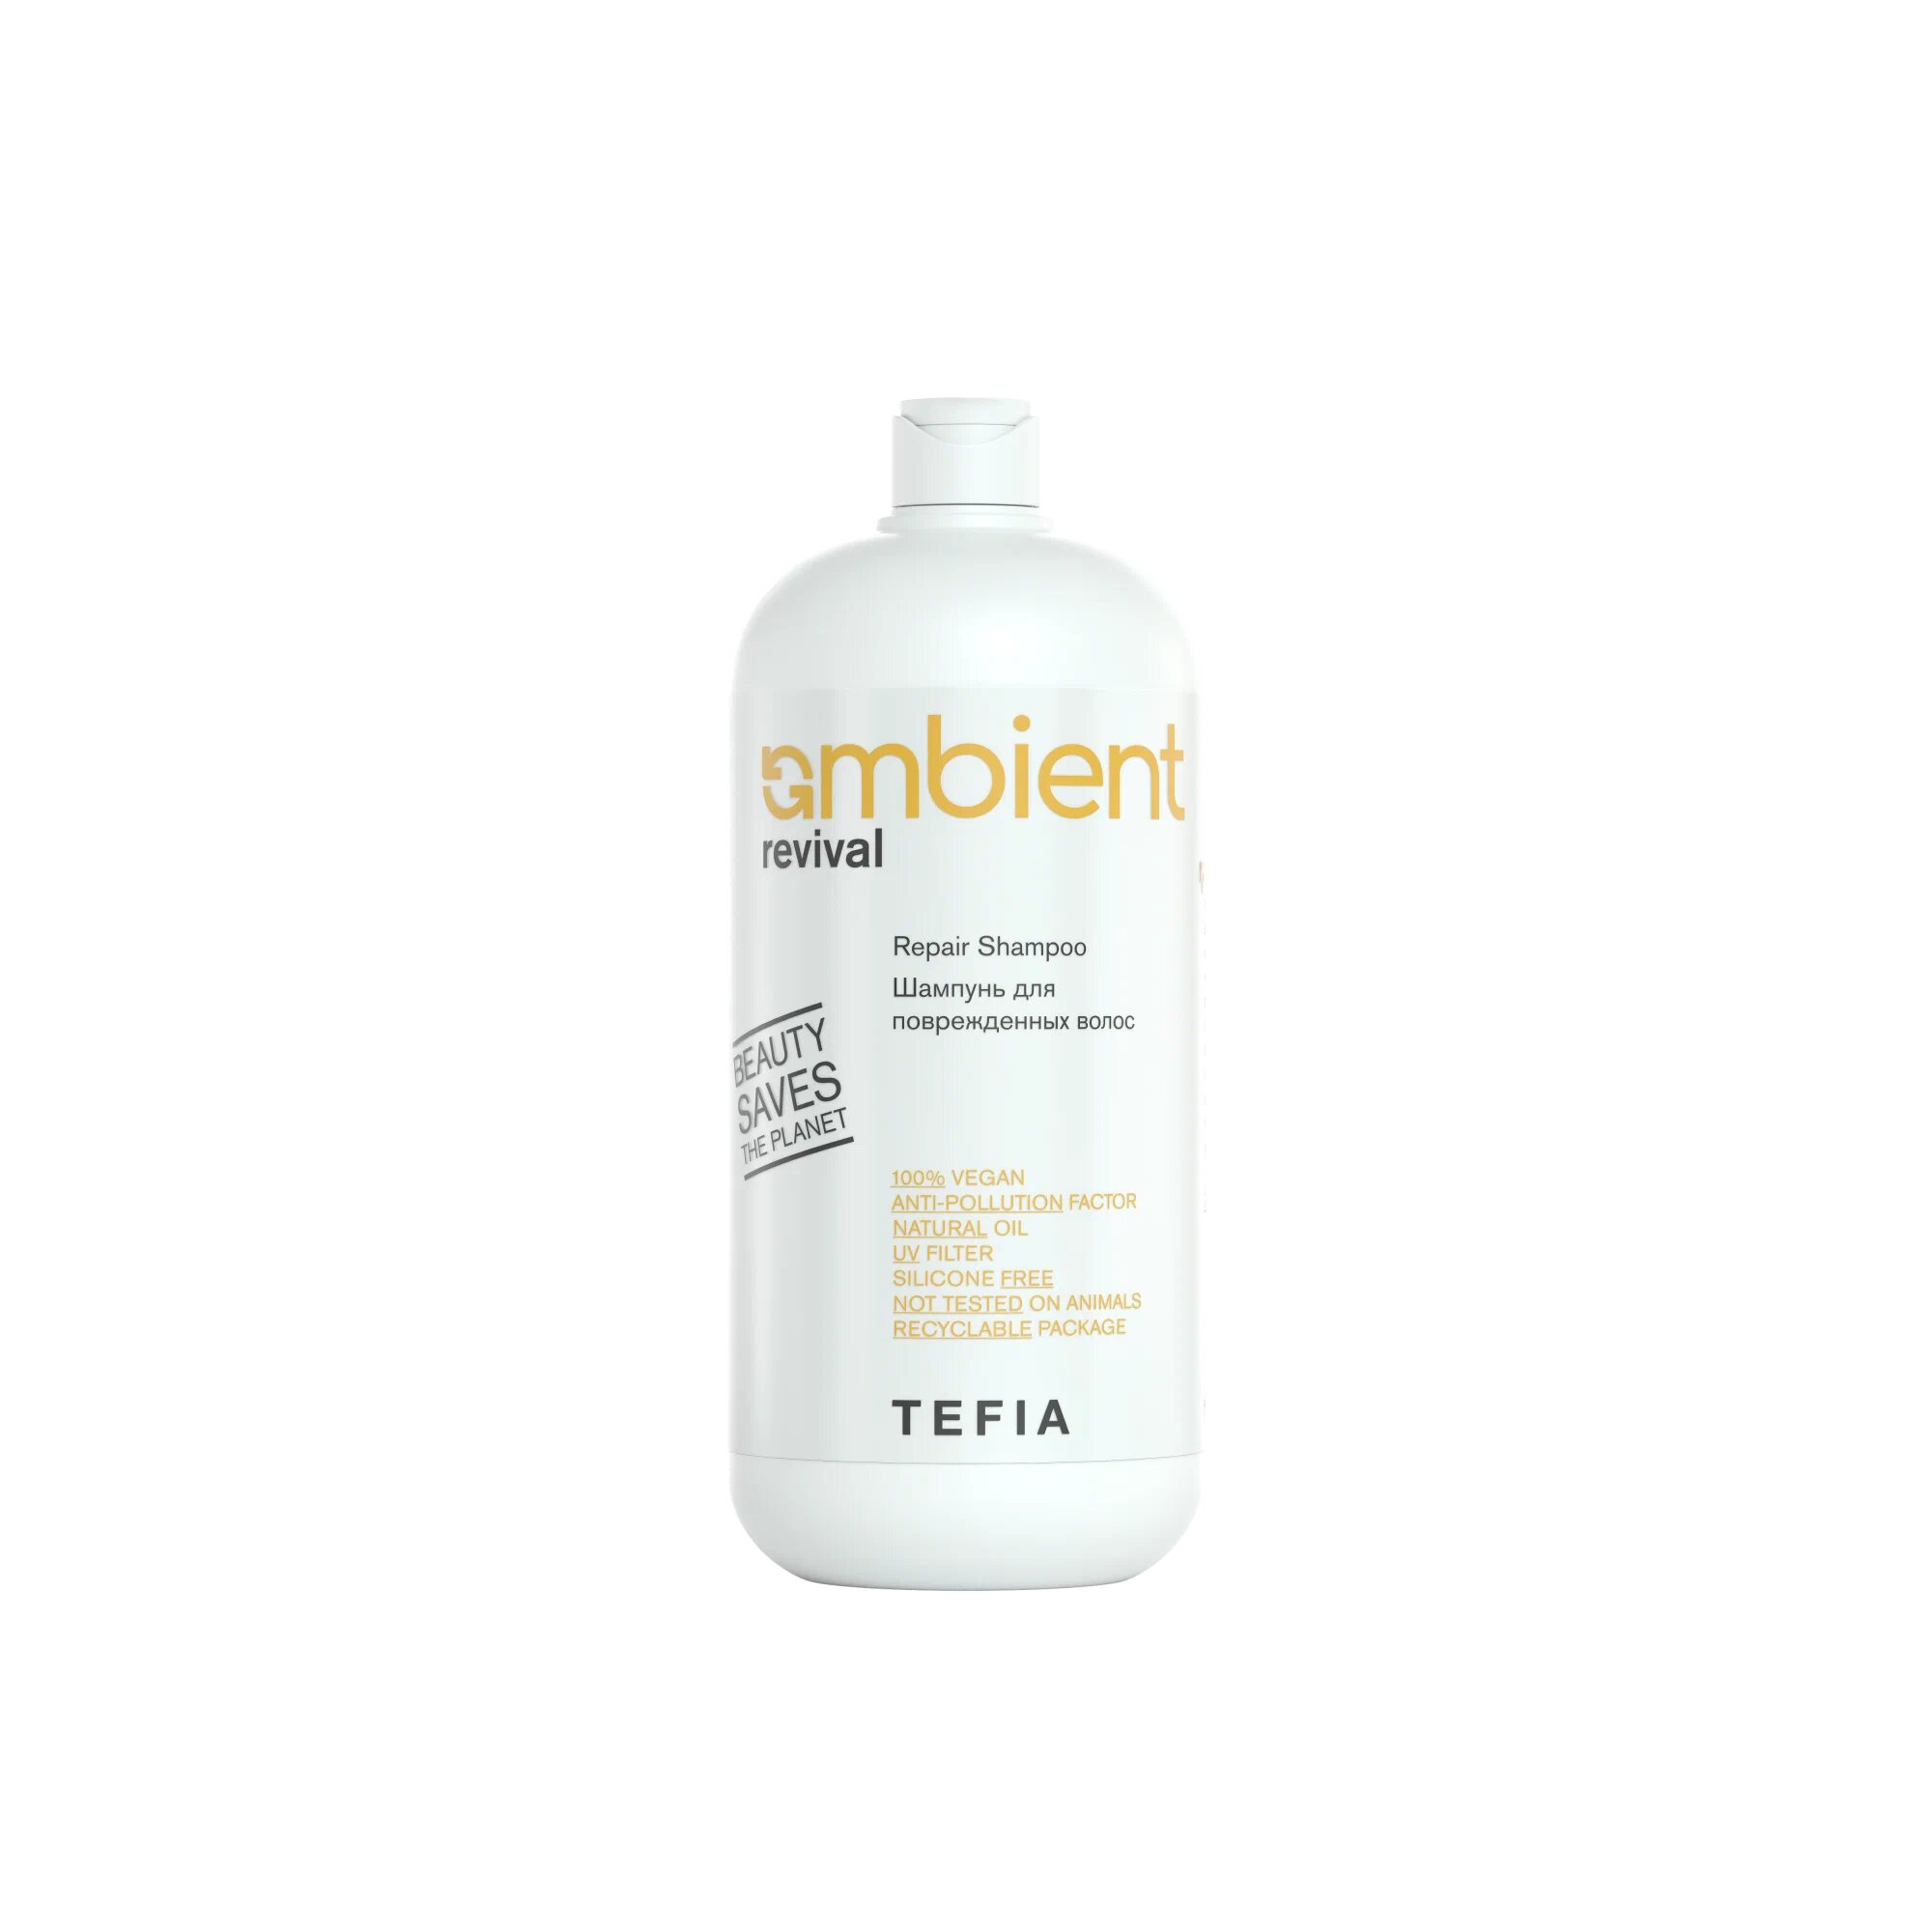 Tefia Ambient Revival Шампунь для поврежденных волос, 950 мл